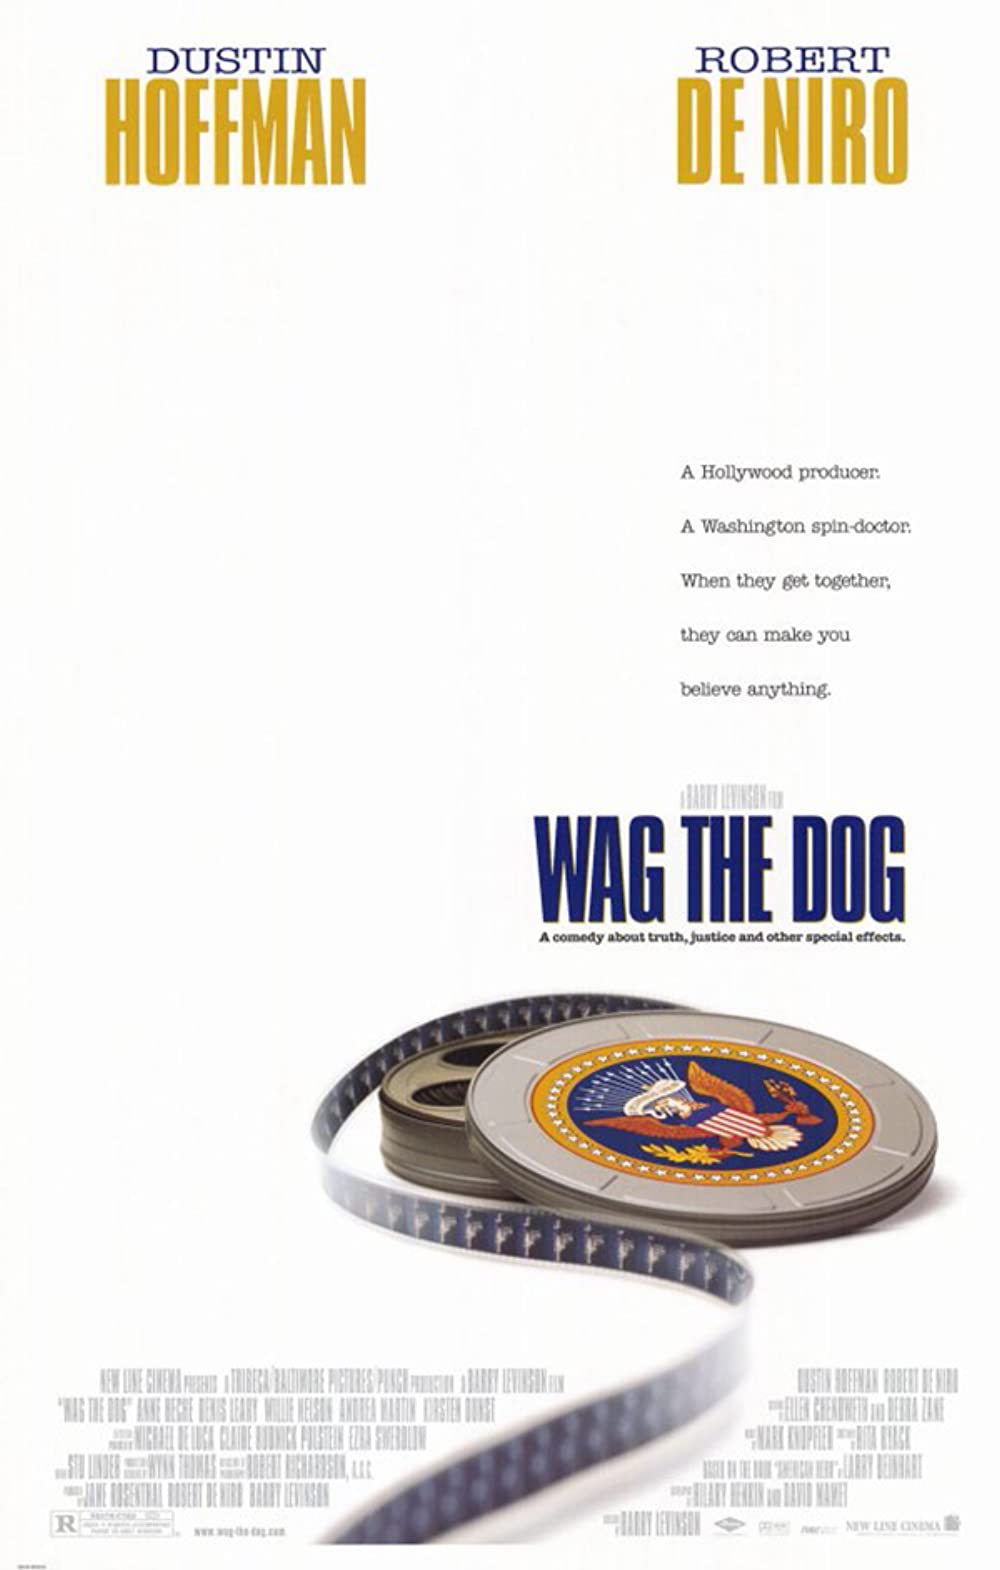 Filmbeschreibung zu Wag the Dog